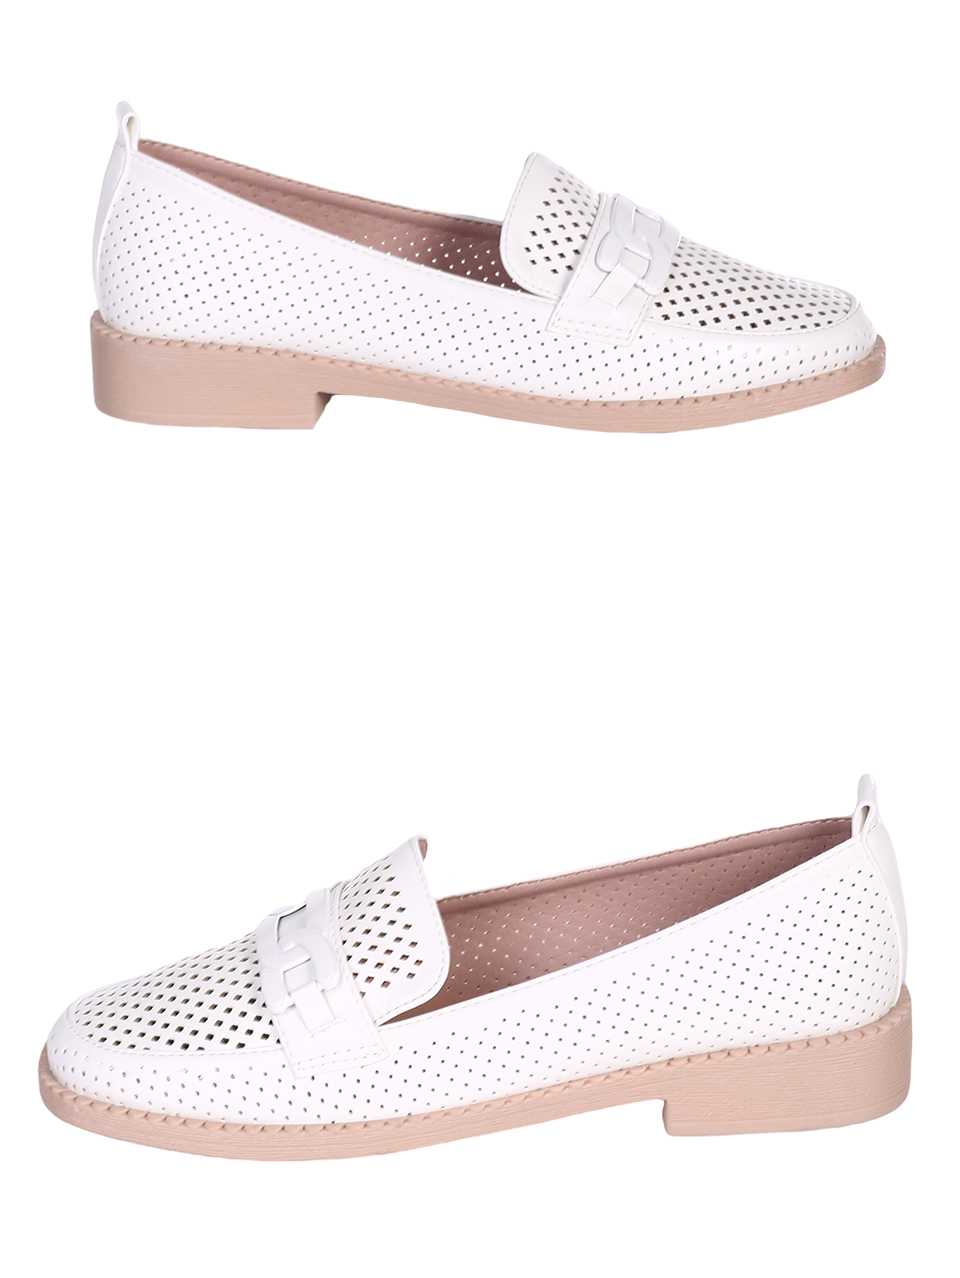 Ежедневни дамски комфортни обувки в бяло 3H-23104 white